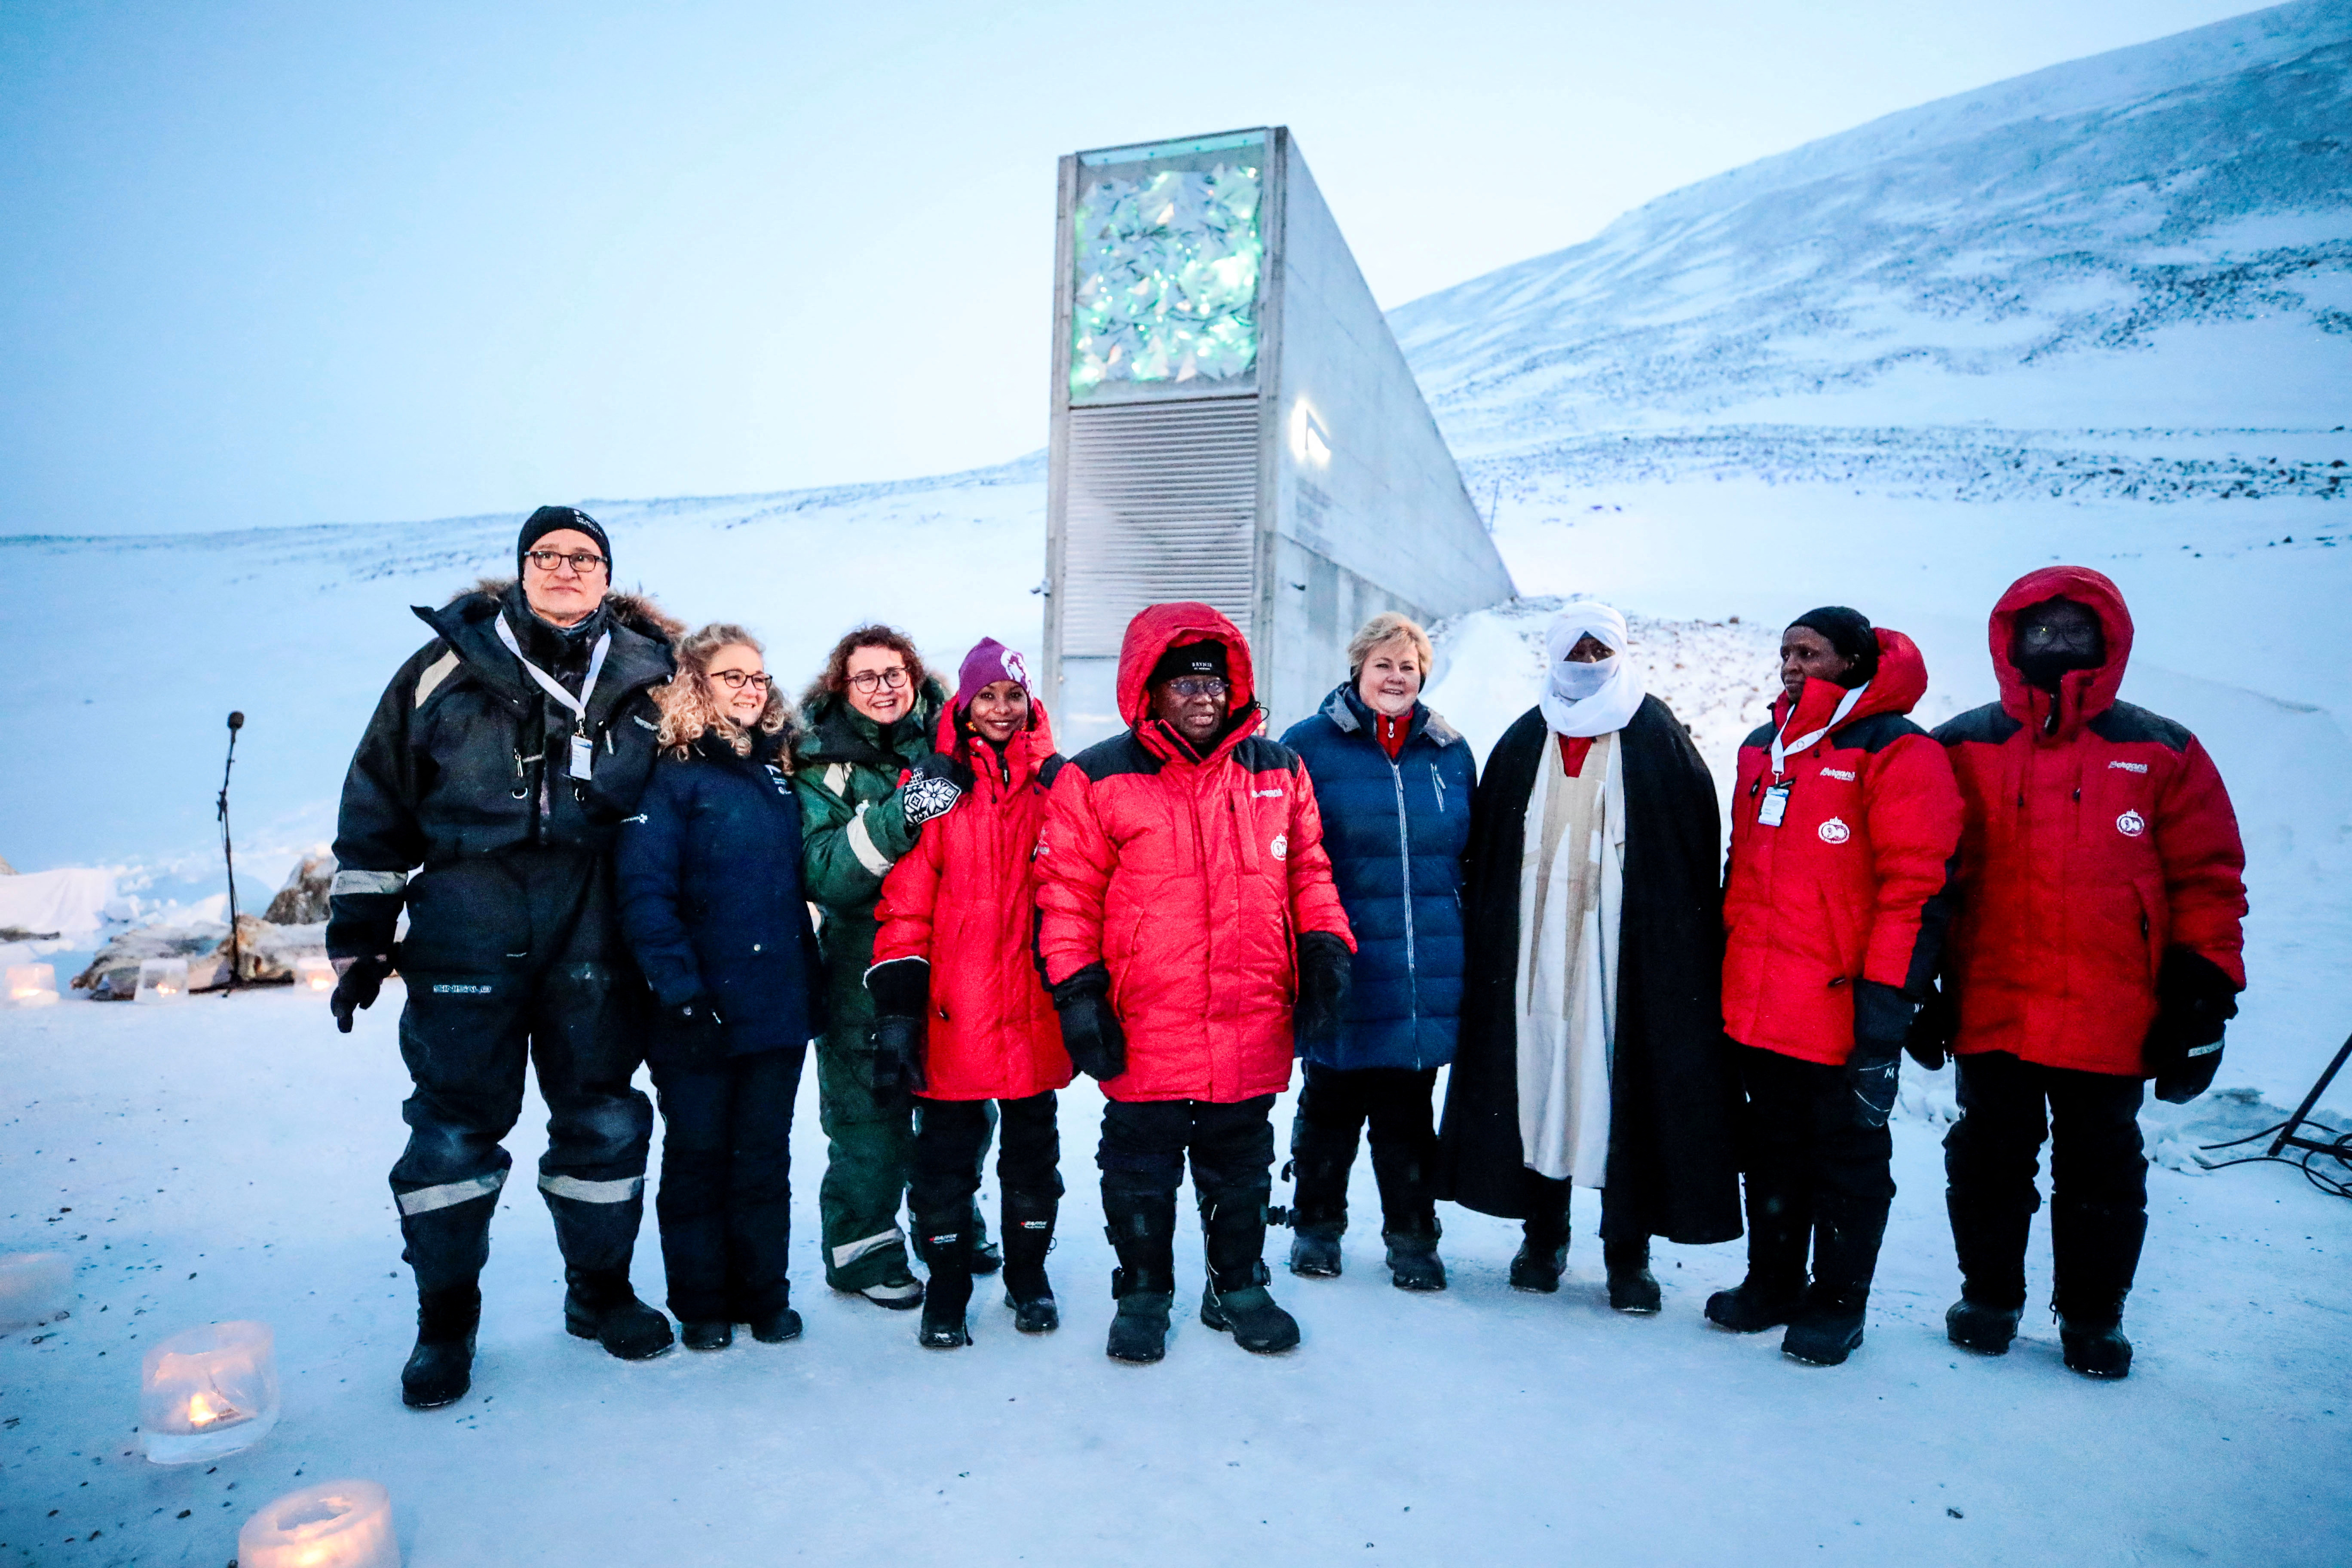 FOTO DE ARCHIVO: La primera ministra de Noruega, Erna Solberg, el ministro de Agricultura y Alimentación, Olaug V. Bollestad, y el presidente de Ghana, Nana Akufo-Addo, visitan la bóveda mundial de semillas de Svalbard en Longyearbyen